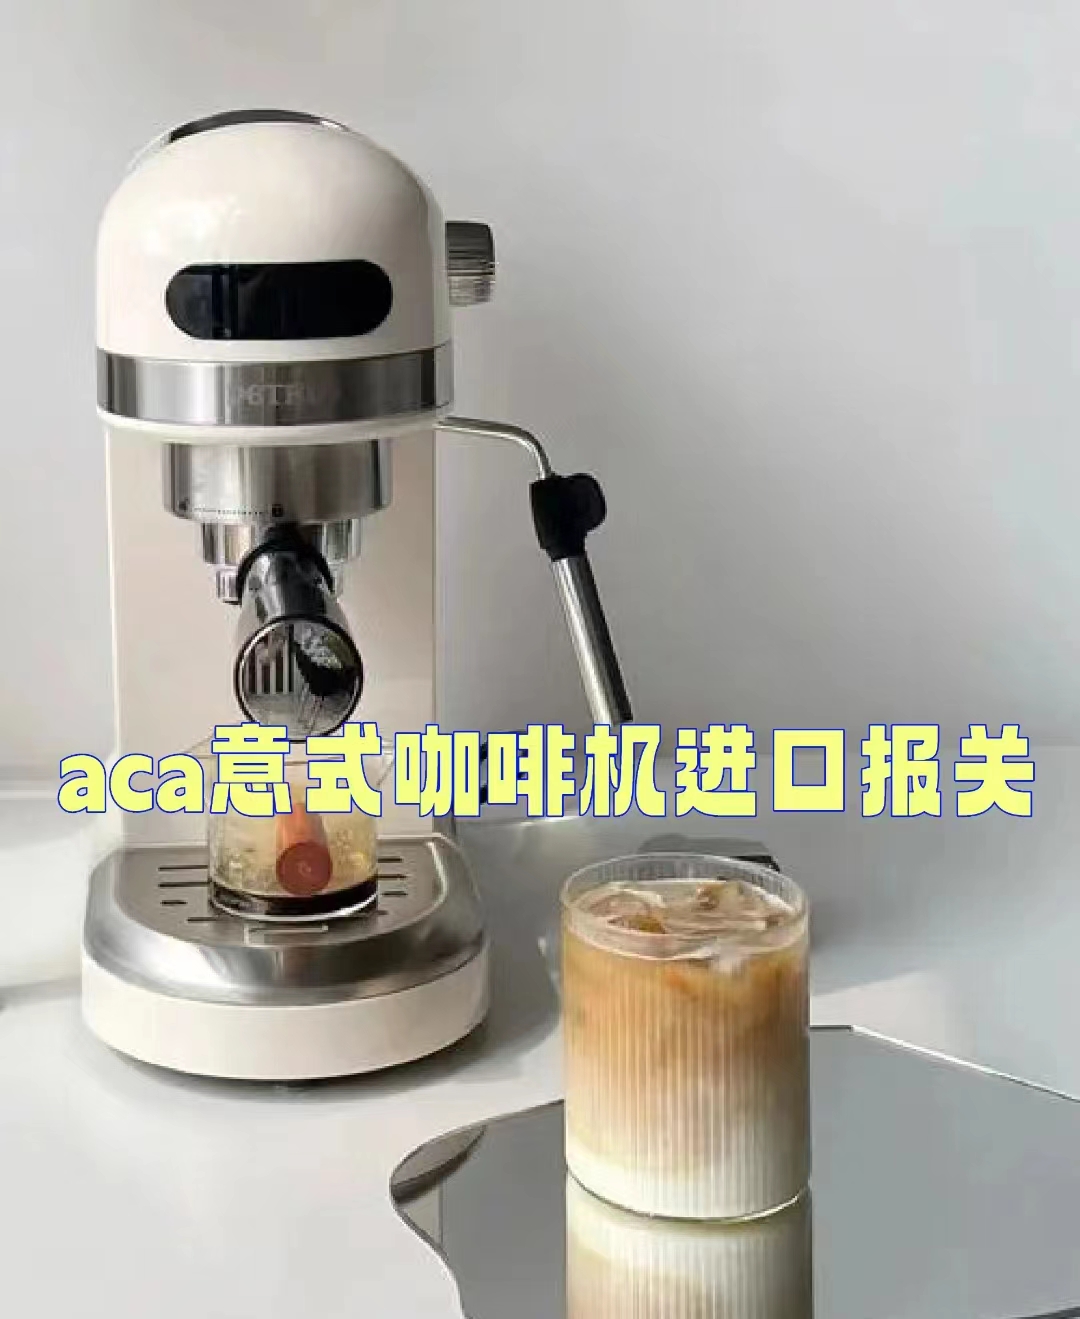 aca咖啡机故障图标解析图片